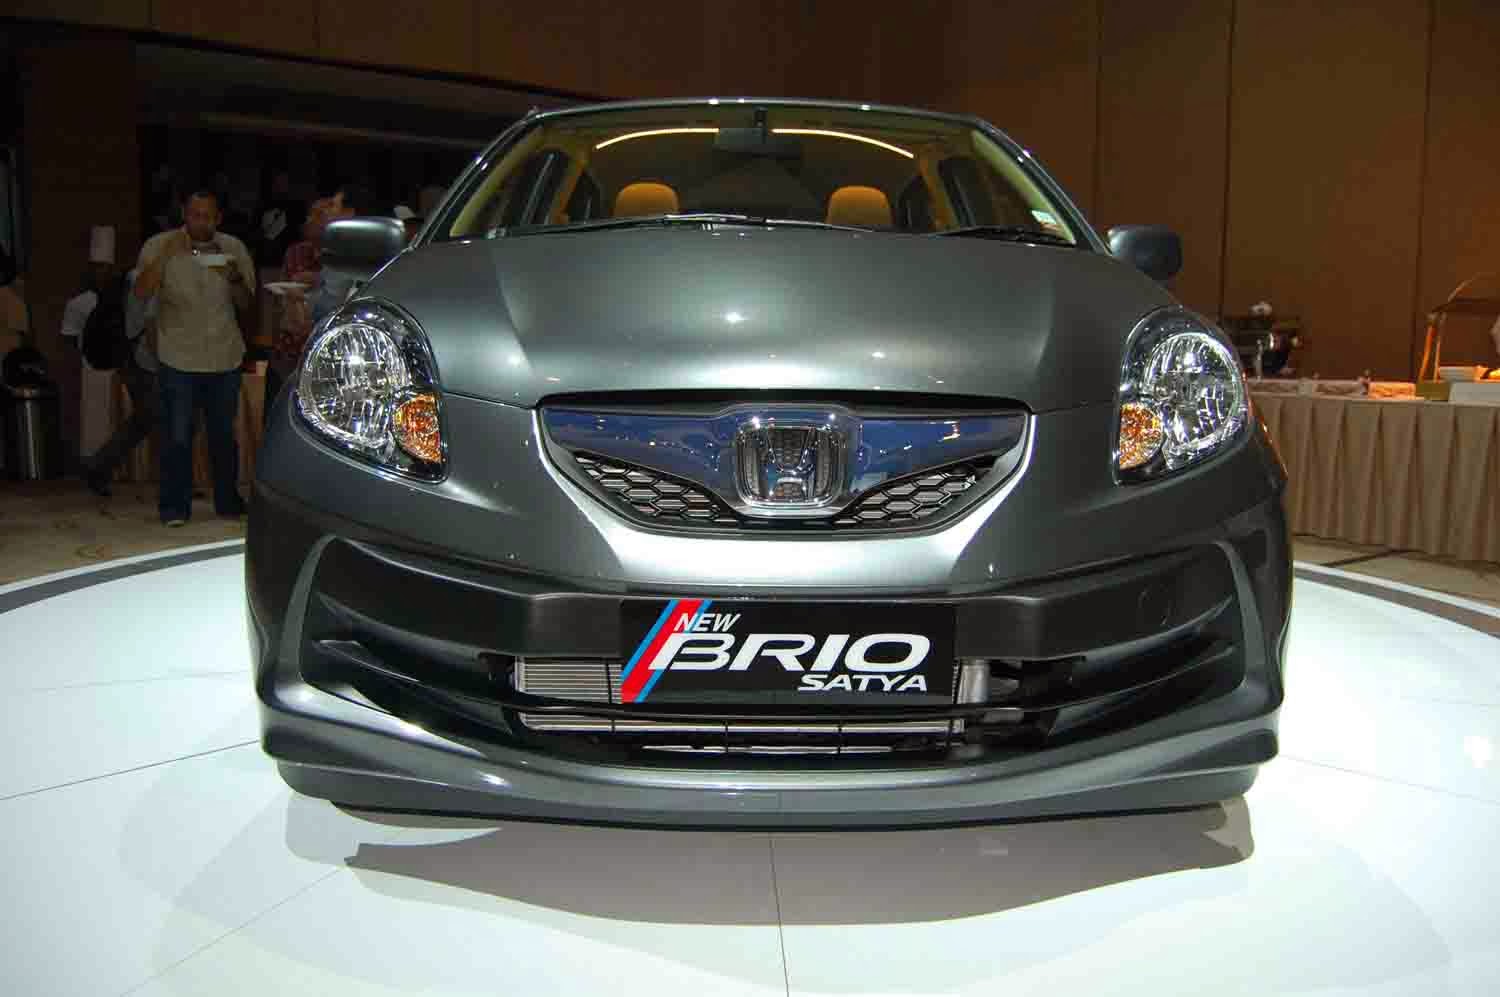 Daftar Harga Dan Type Mobil Murah Honda Brio Satya OtoasiaNet